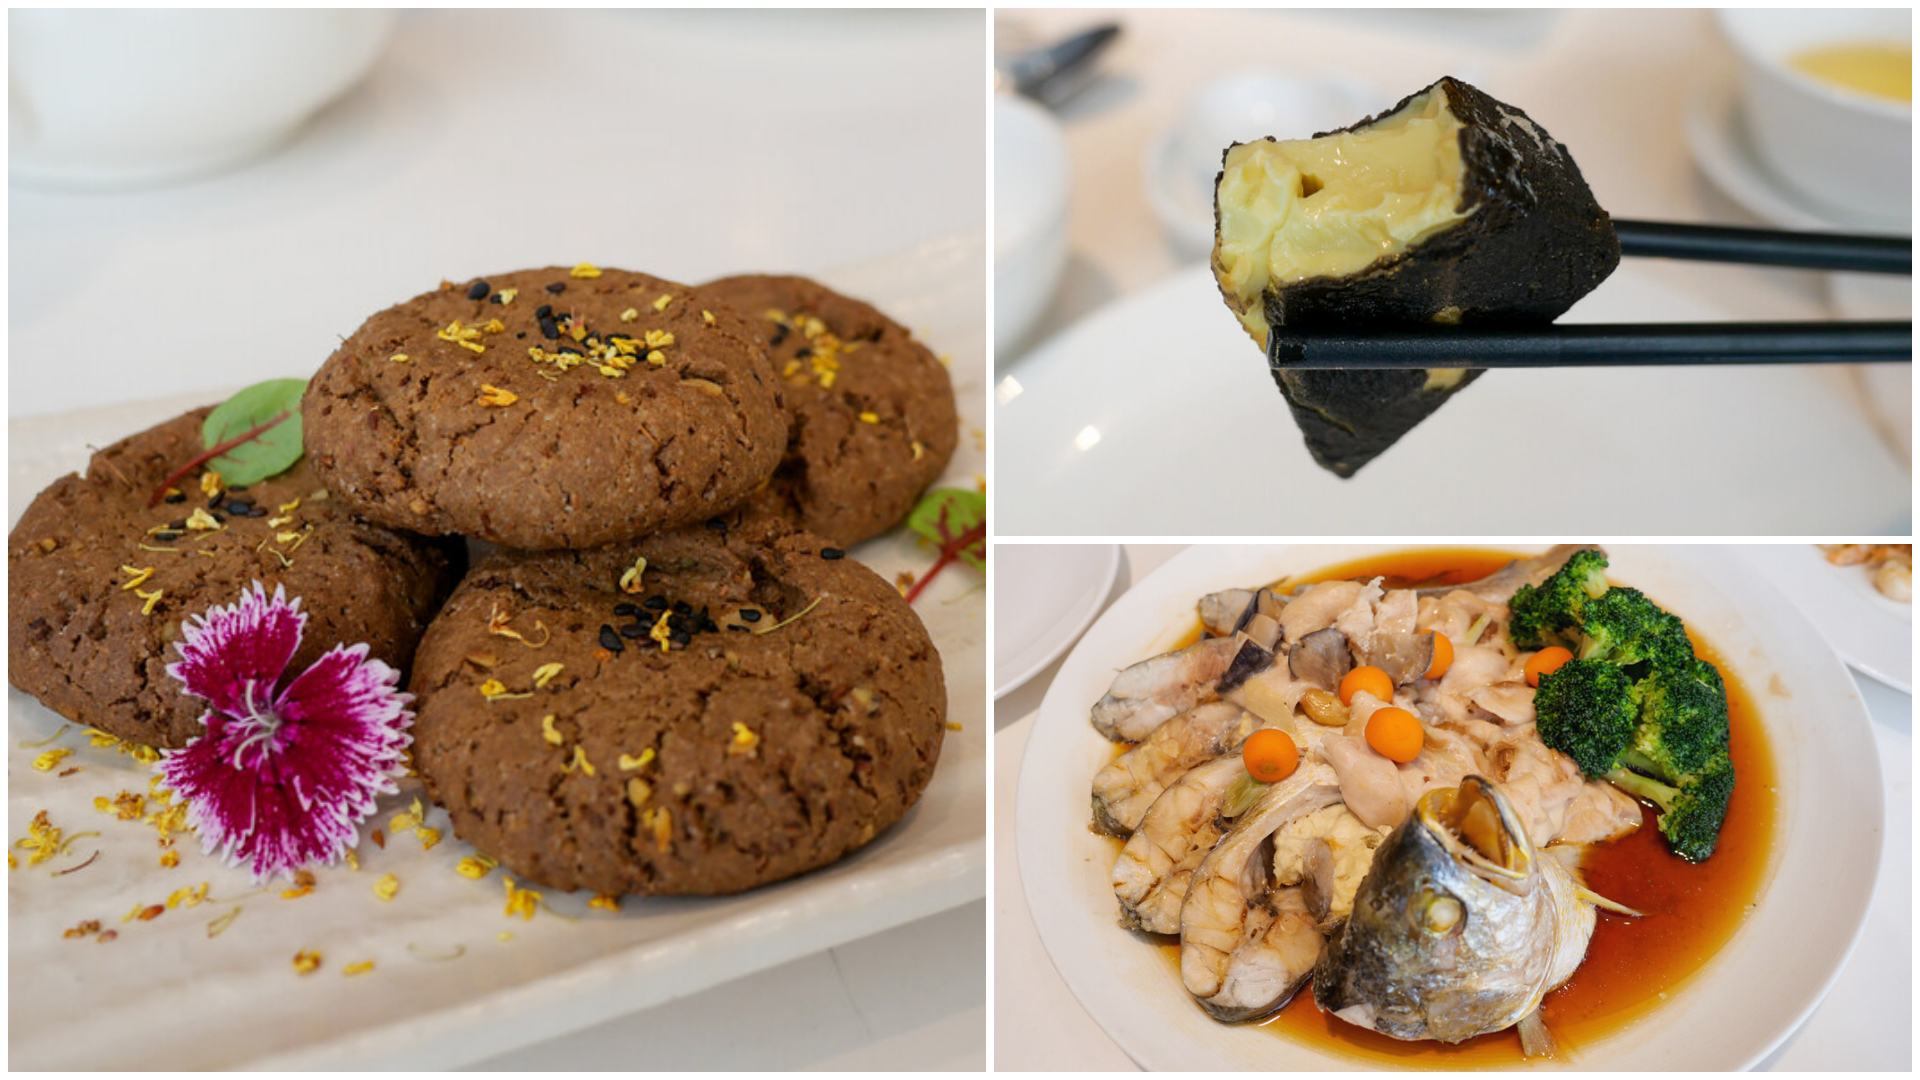 香港美食,香港自由行,泰昌餅店,蘭芳園,香港蛋塔 @TISS玩味食尚